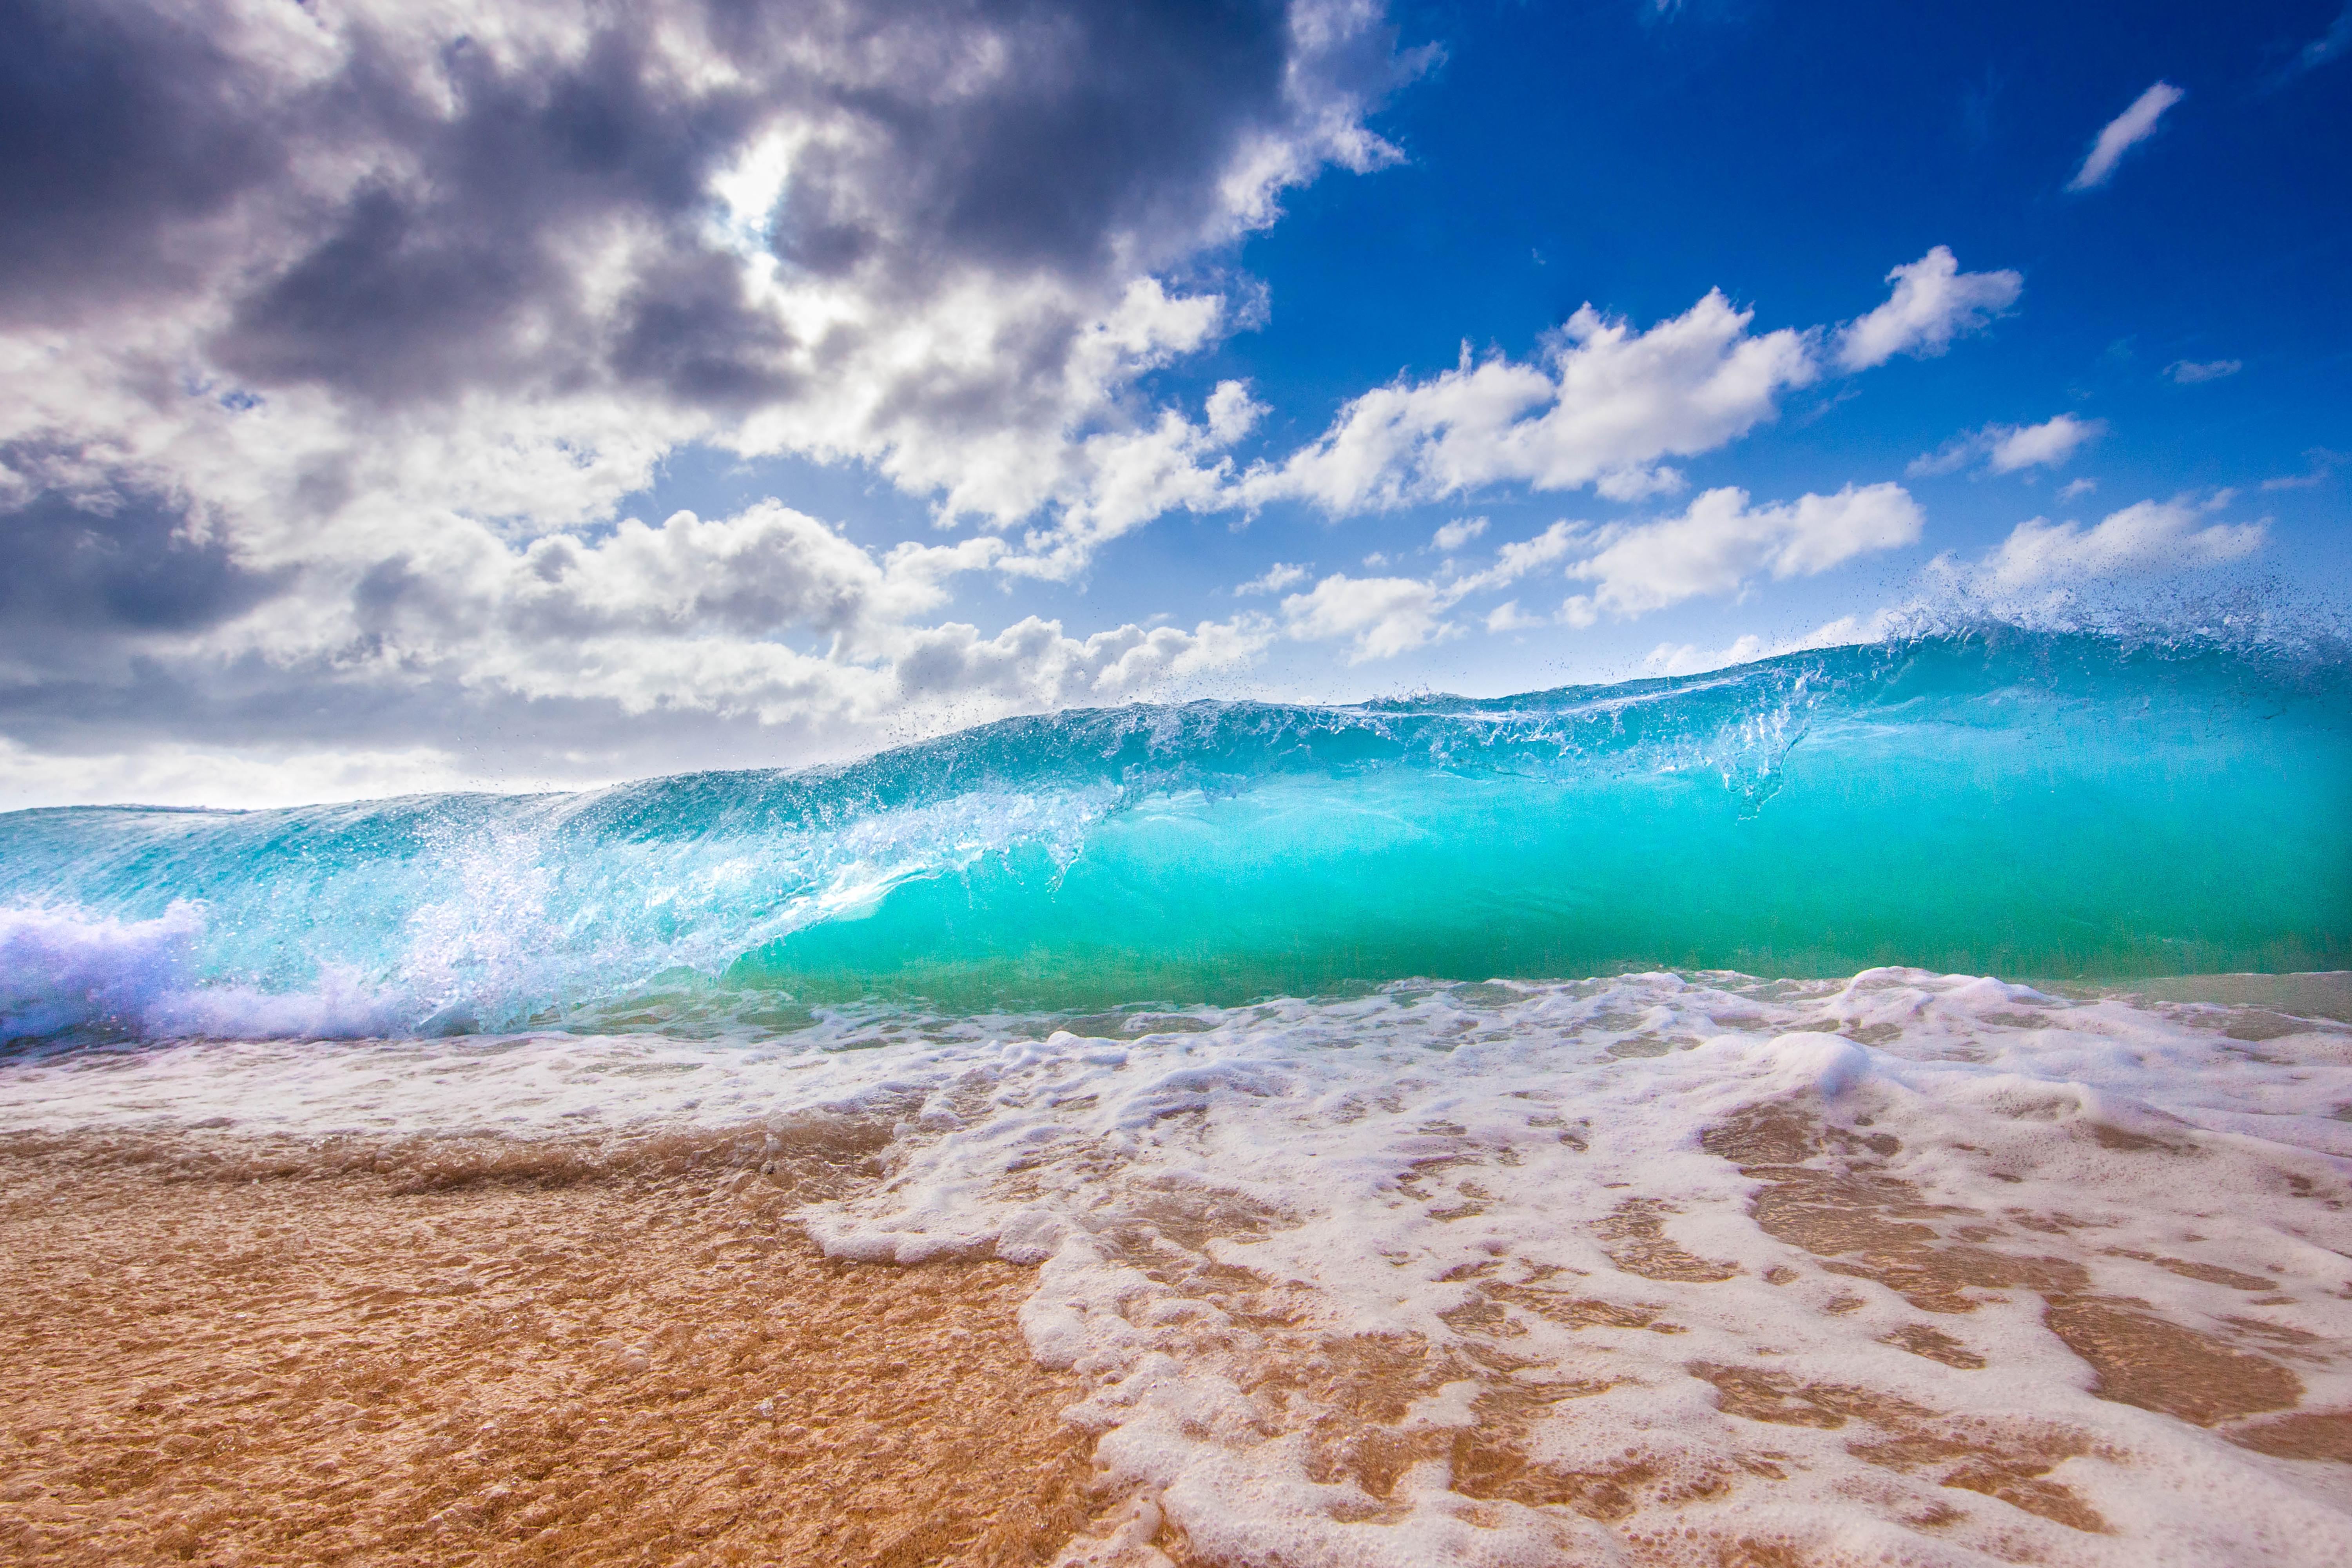 Lautan, Selancar, Busa, Hawaii, Pantai - Iphone Wallpaper Hawaii Beach - HD Wallpaper 